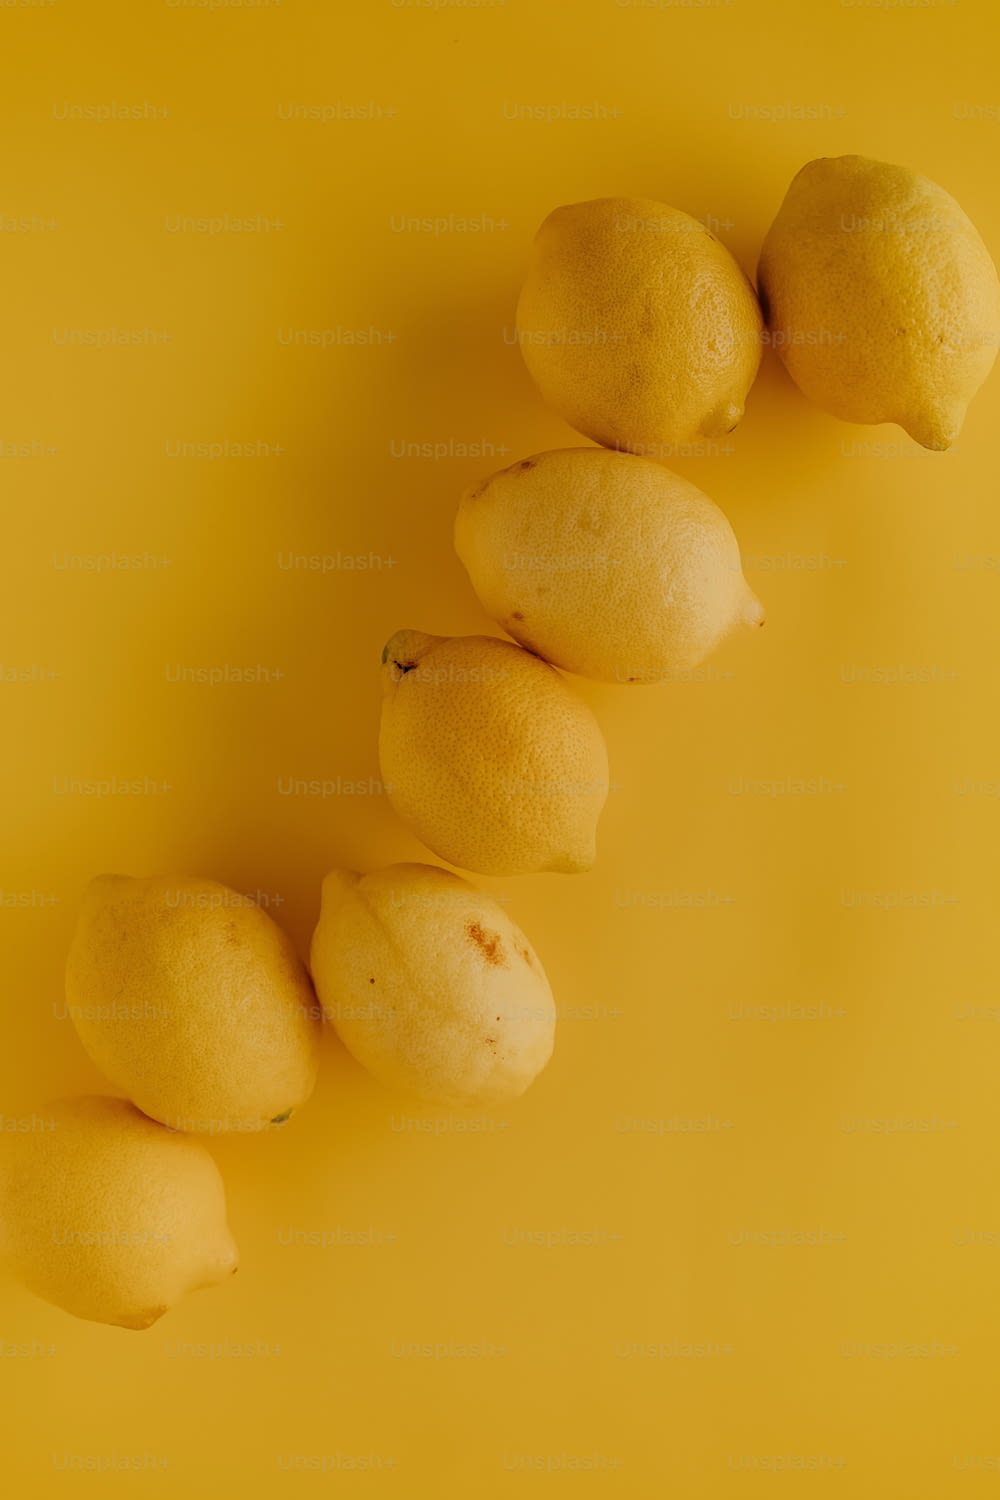 노란색 표면 위에 레몬 한 줄이 앉아 있습니다